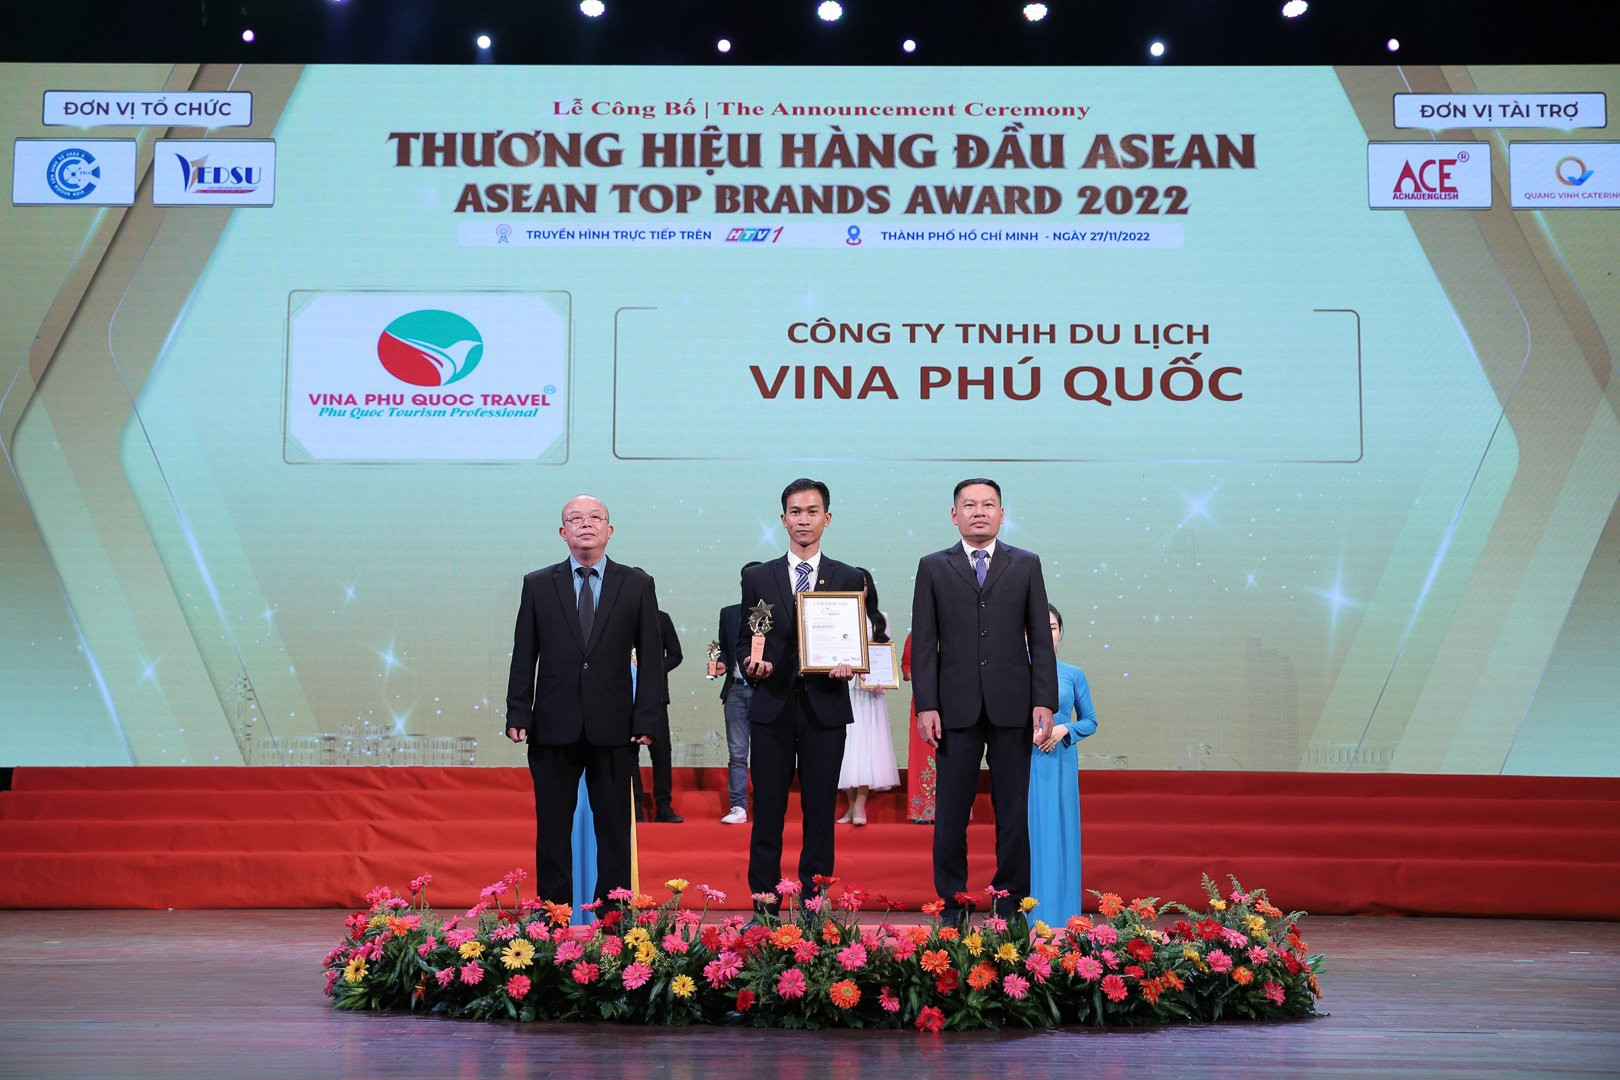 Công ty TNHH Du lịch Vina Phú Quốc (Vina Phú Quốc Travel) được vinh danh tại giải thưởng “Thương hiệu hàng đầu ASEAN 2022”  - z3917789873290-1-962 - Vina Phú Quốc Travel nhận danh hiệu Thương hiệu hàng đầu ASEAN 2022